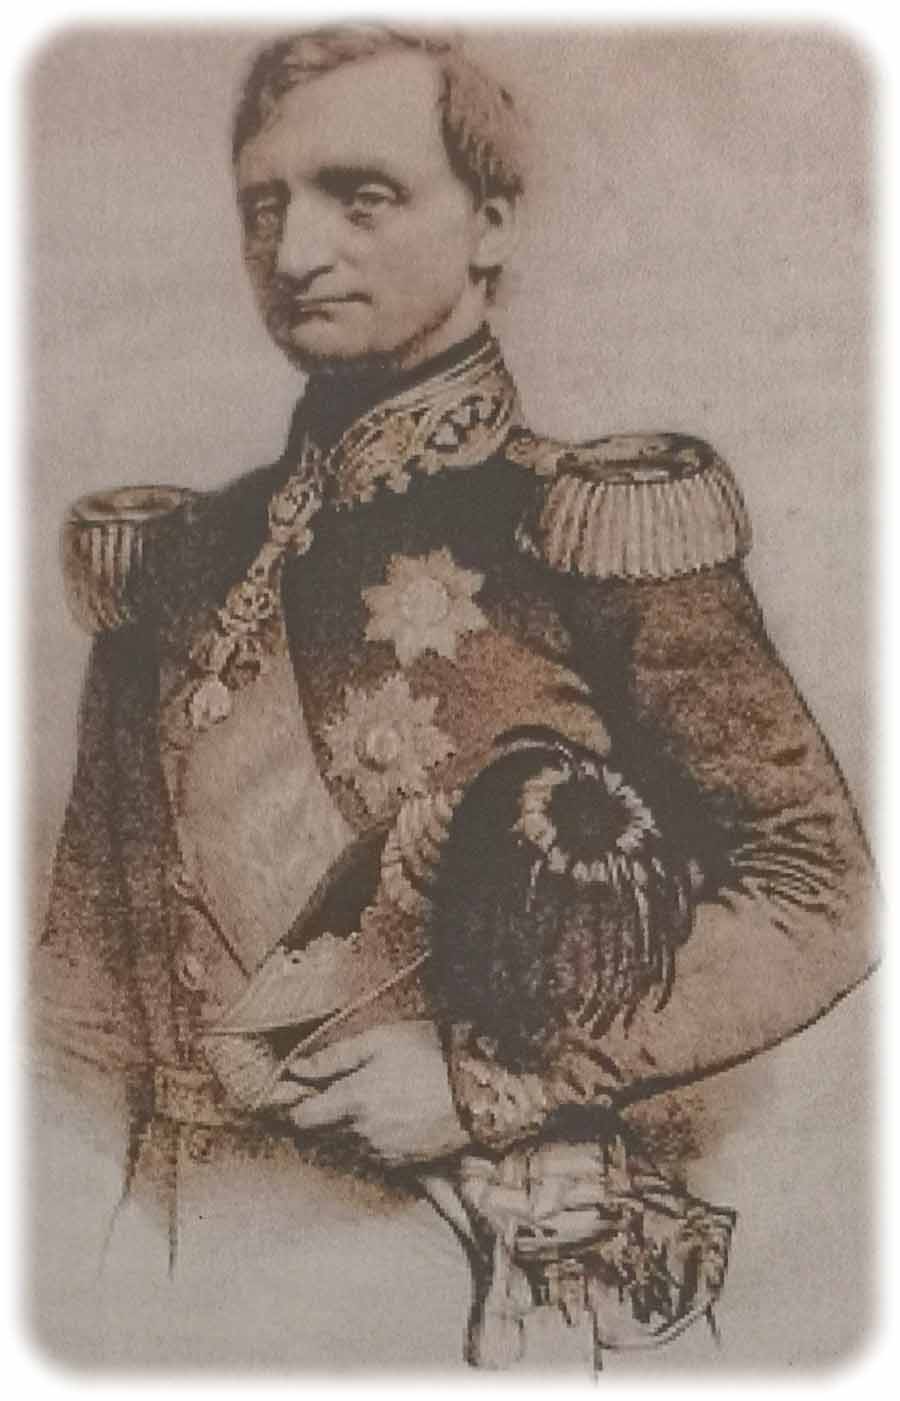 König Johann von Sachsen (1854.1873) um 1857 - er interessierte sich auch für technische Details. Repro (hw) aus: Jürgen Schubert: Die Hänichener Kohlenbahn“